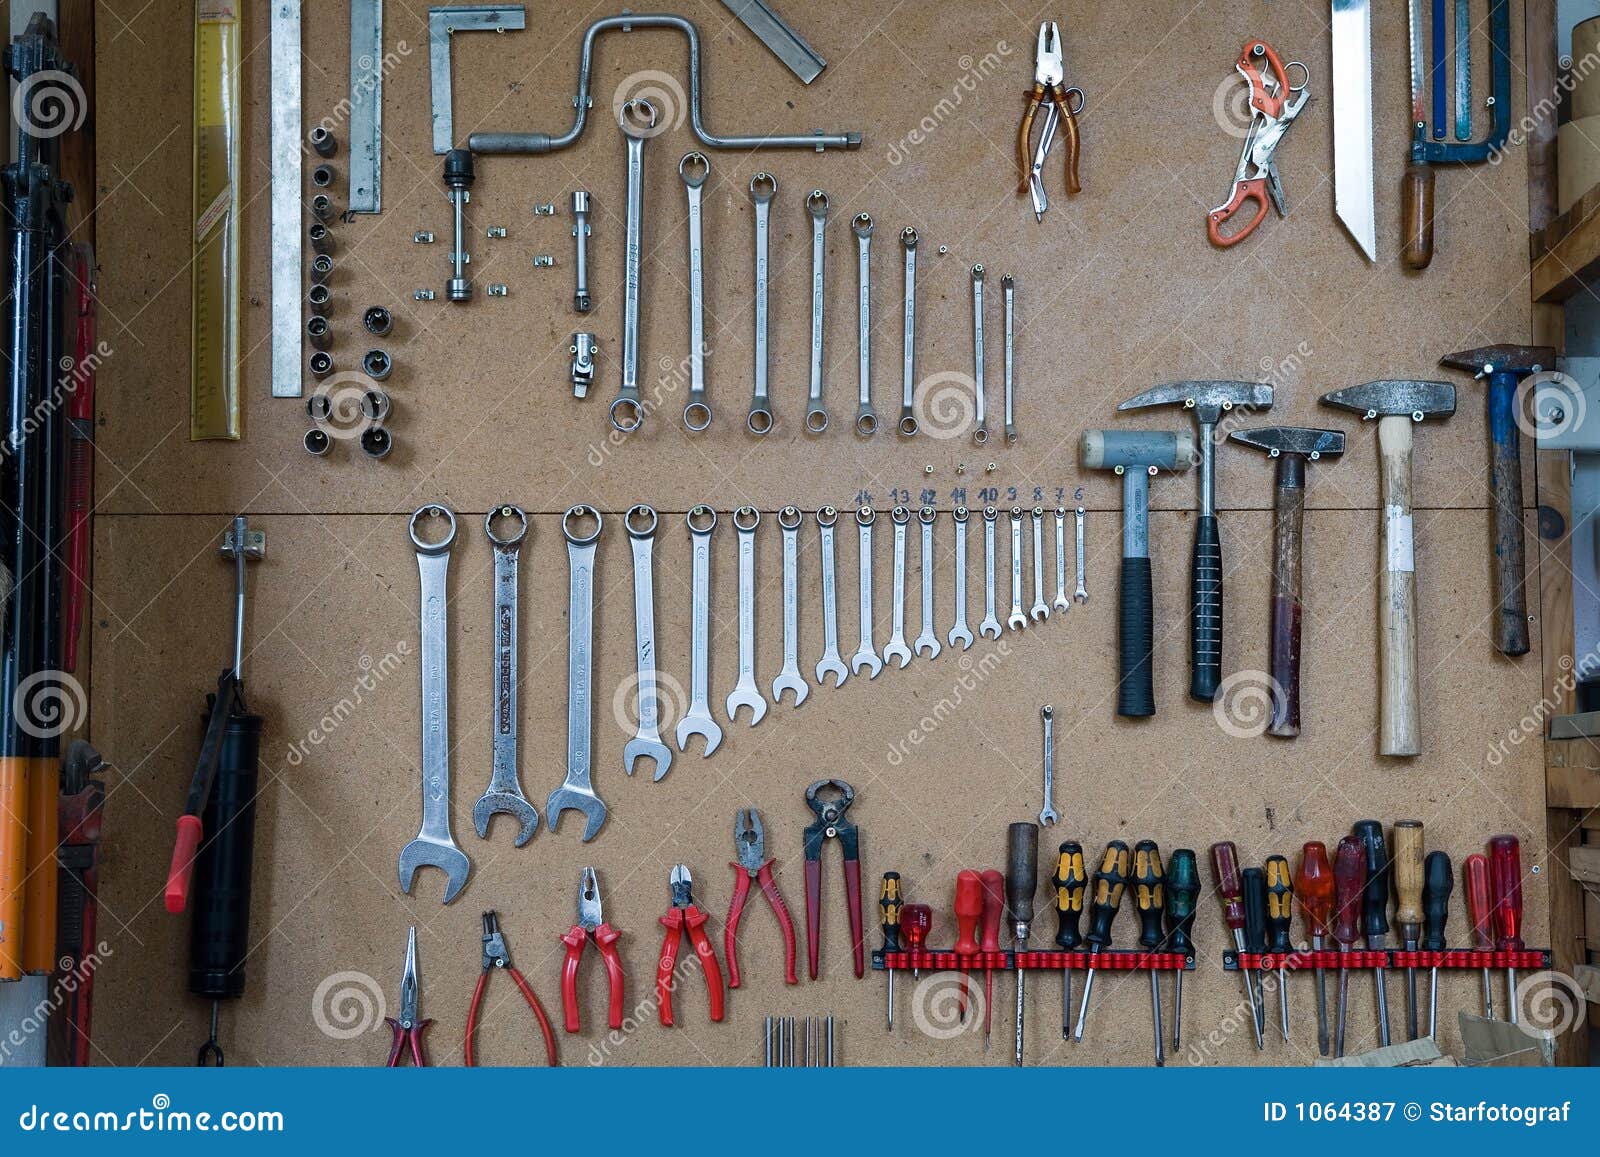 Molti strumenti differenti in una cassetta portautensili